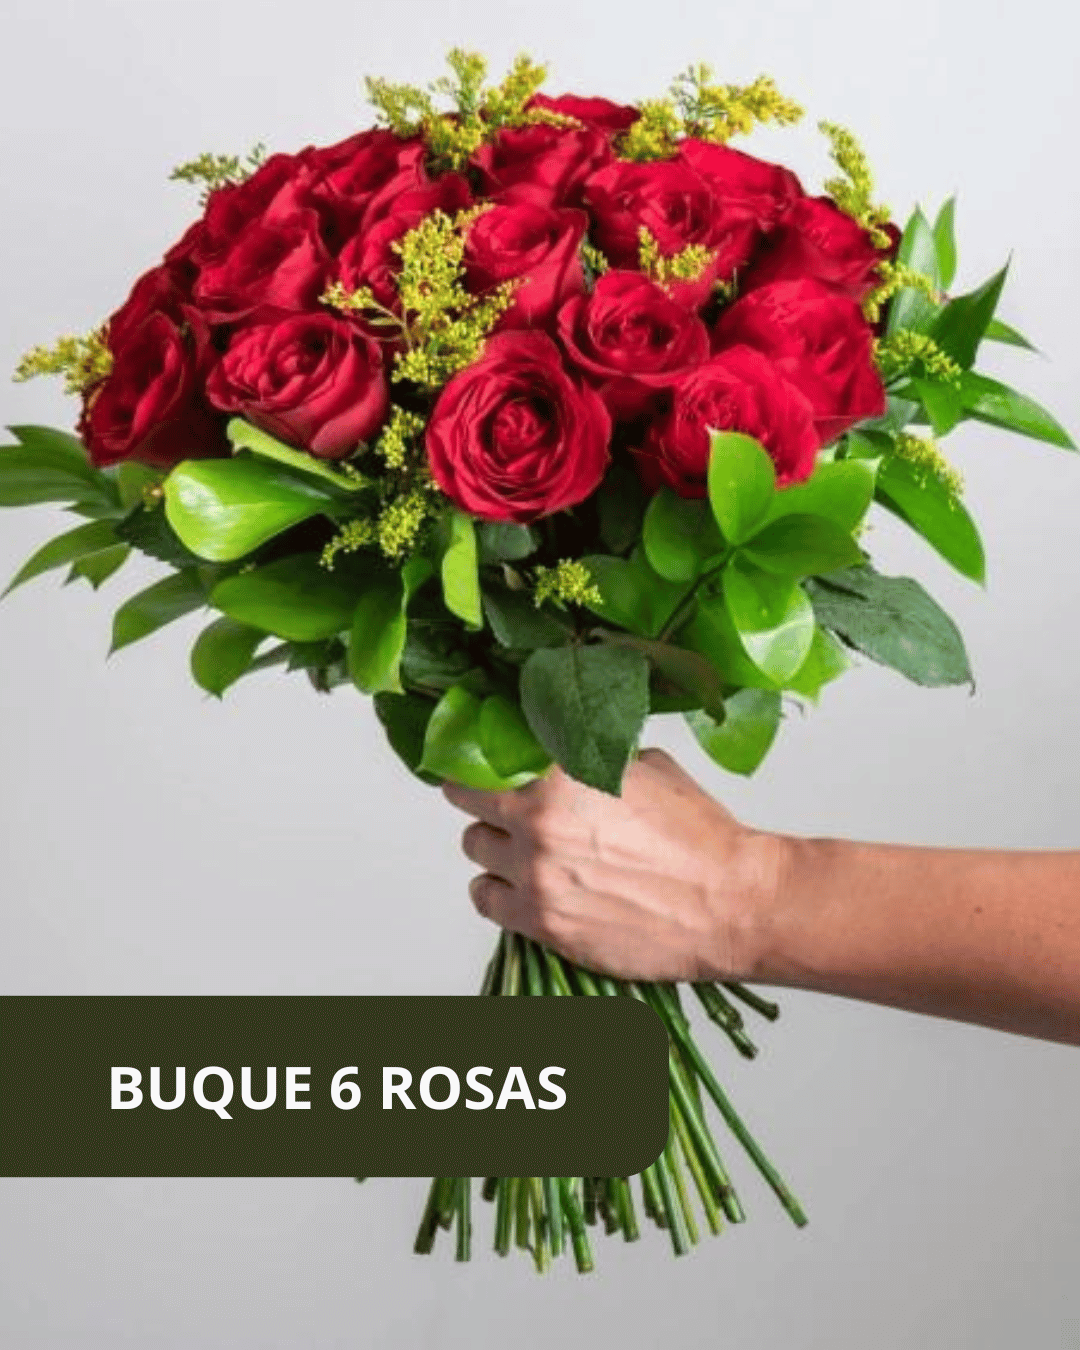 Buque-6-Rosas-Netflix.png